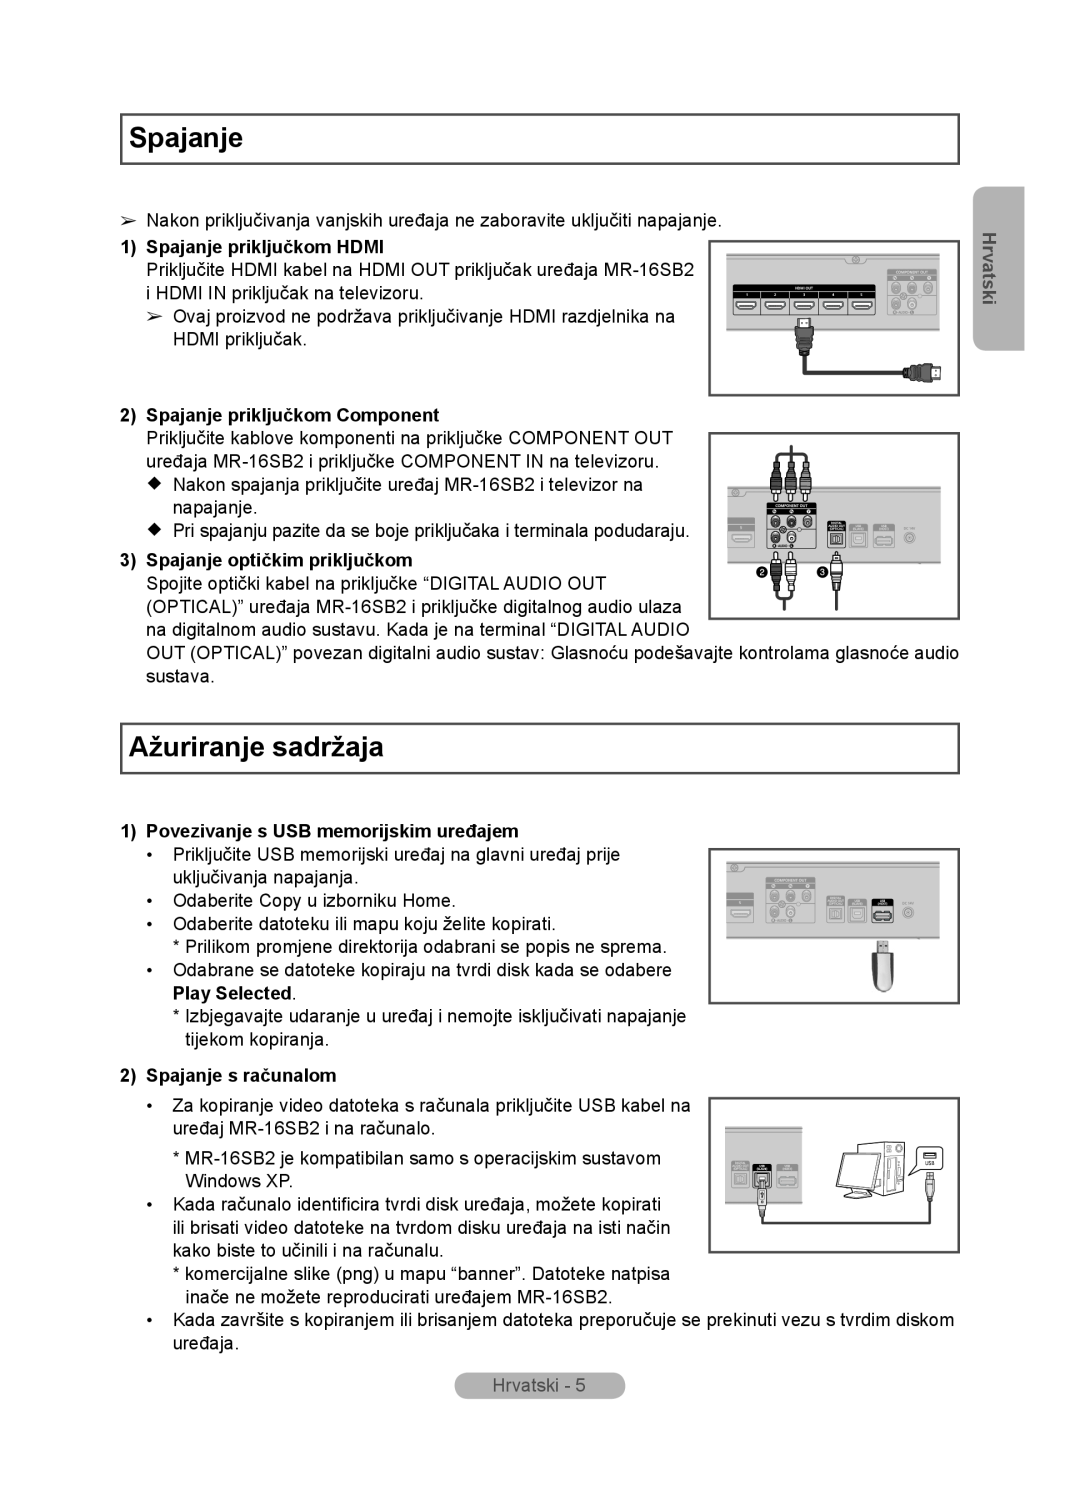 Samsung MR-16SB2 manual Ažuriranje sadržaja, Spajanje priključkom HDMI, Spajanje priključkom Component, Play Selected 